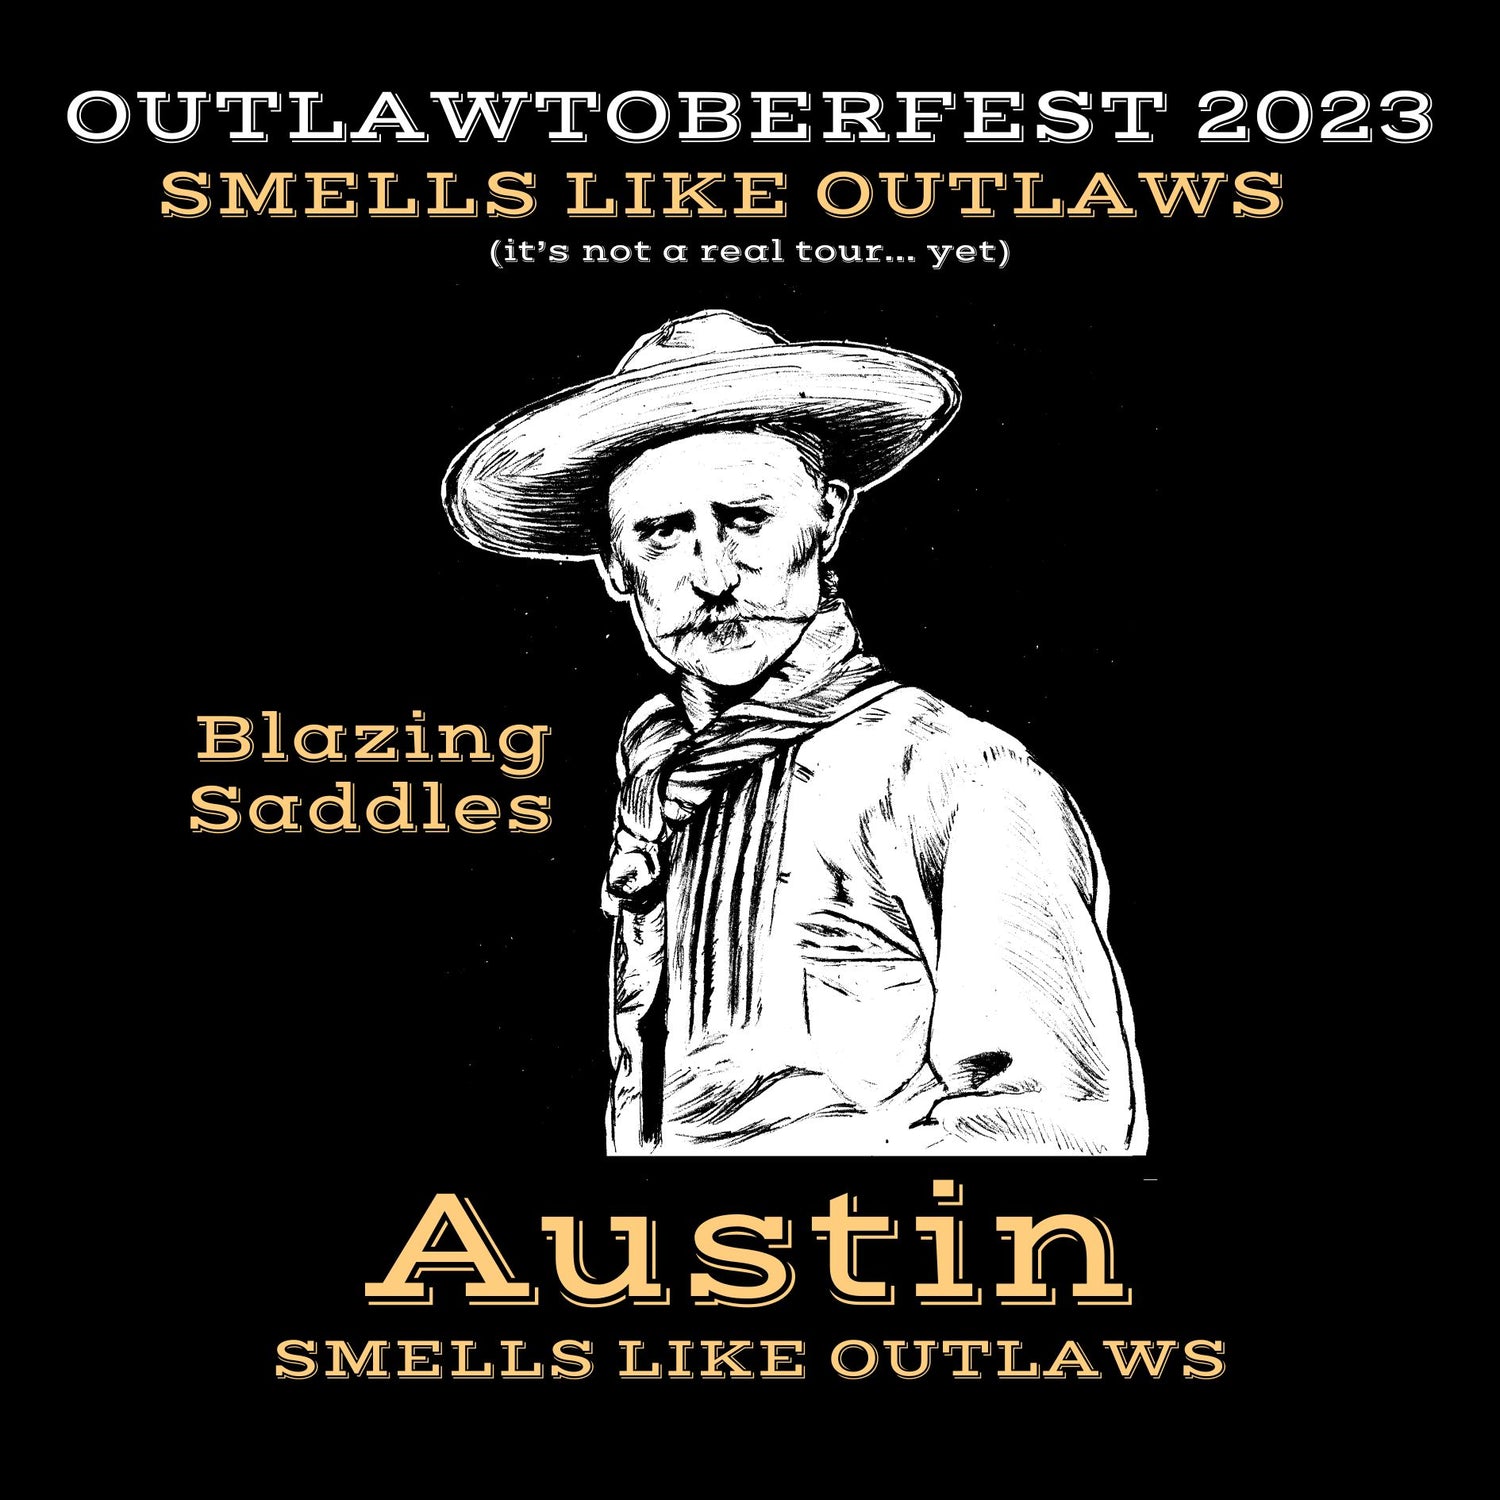 Outlawtoberfest Tour takes AUSTIN!